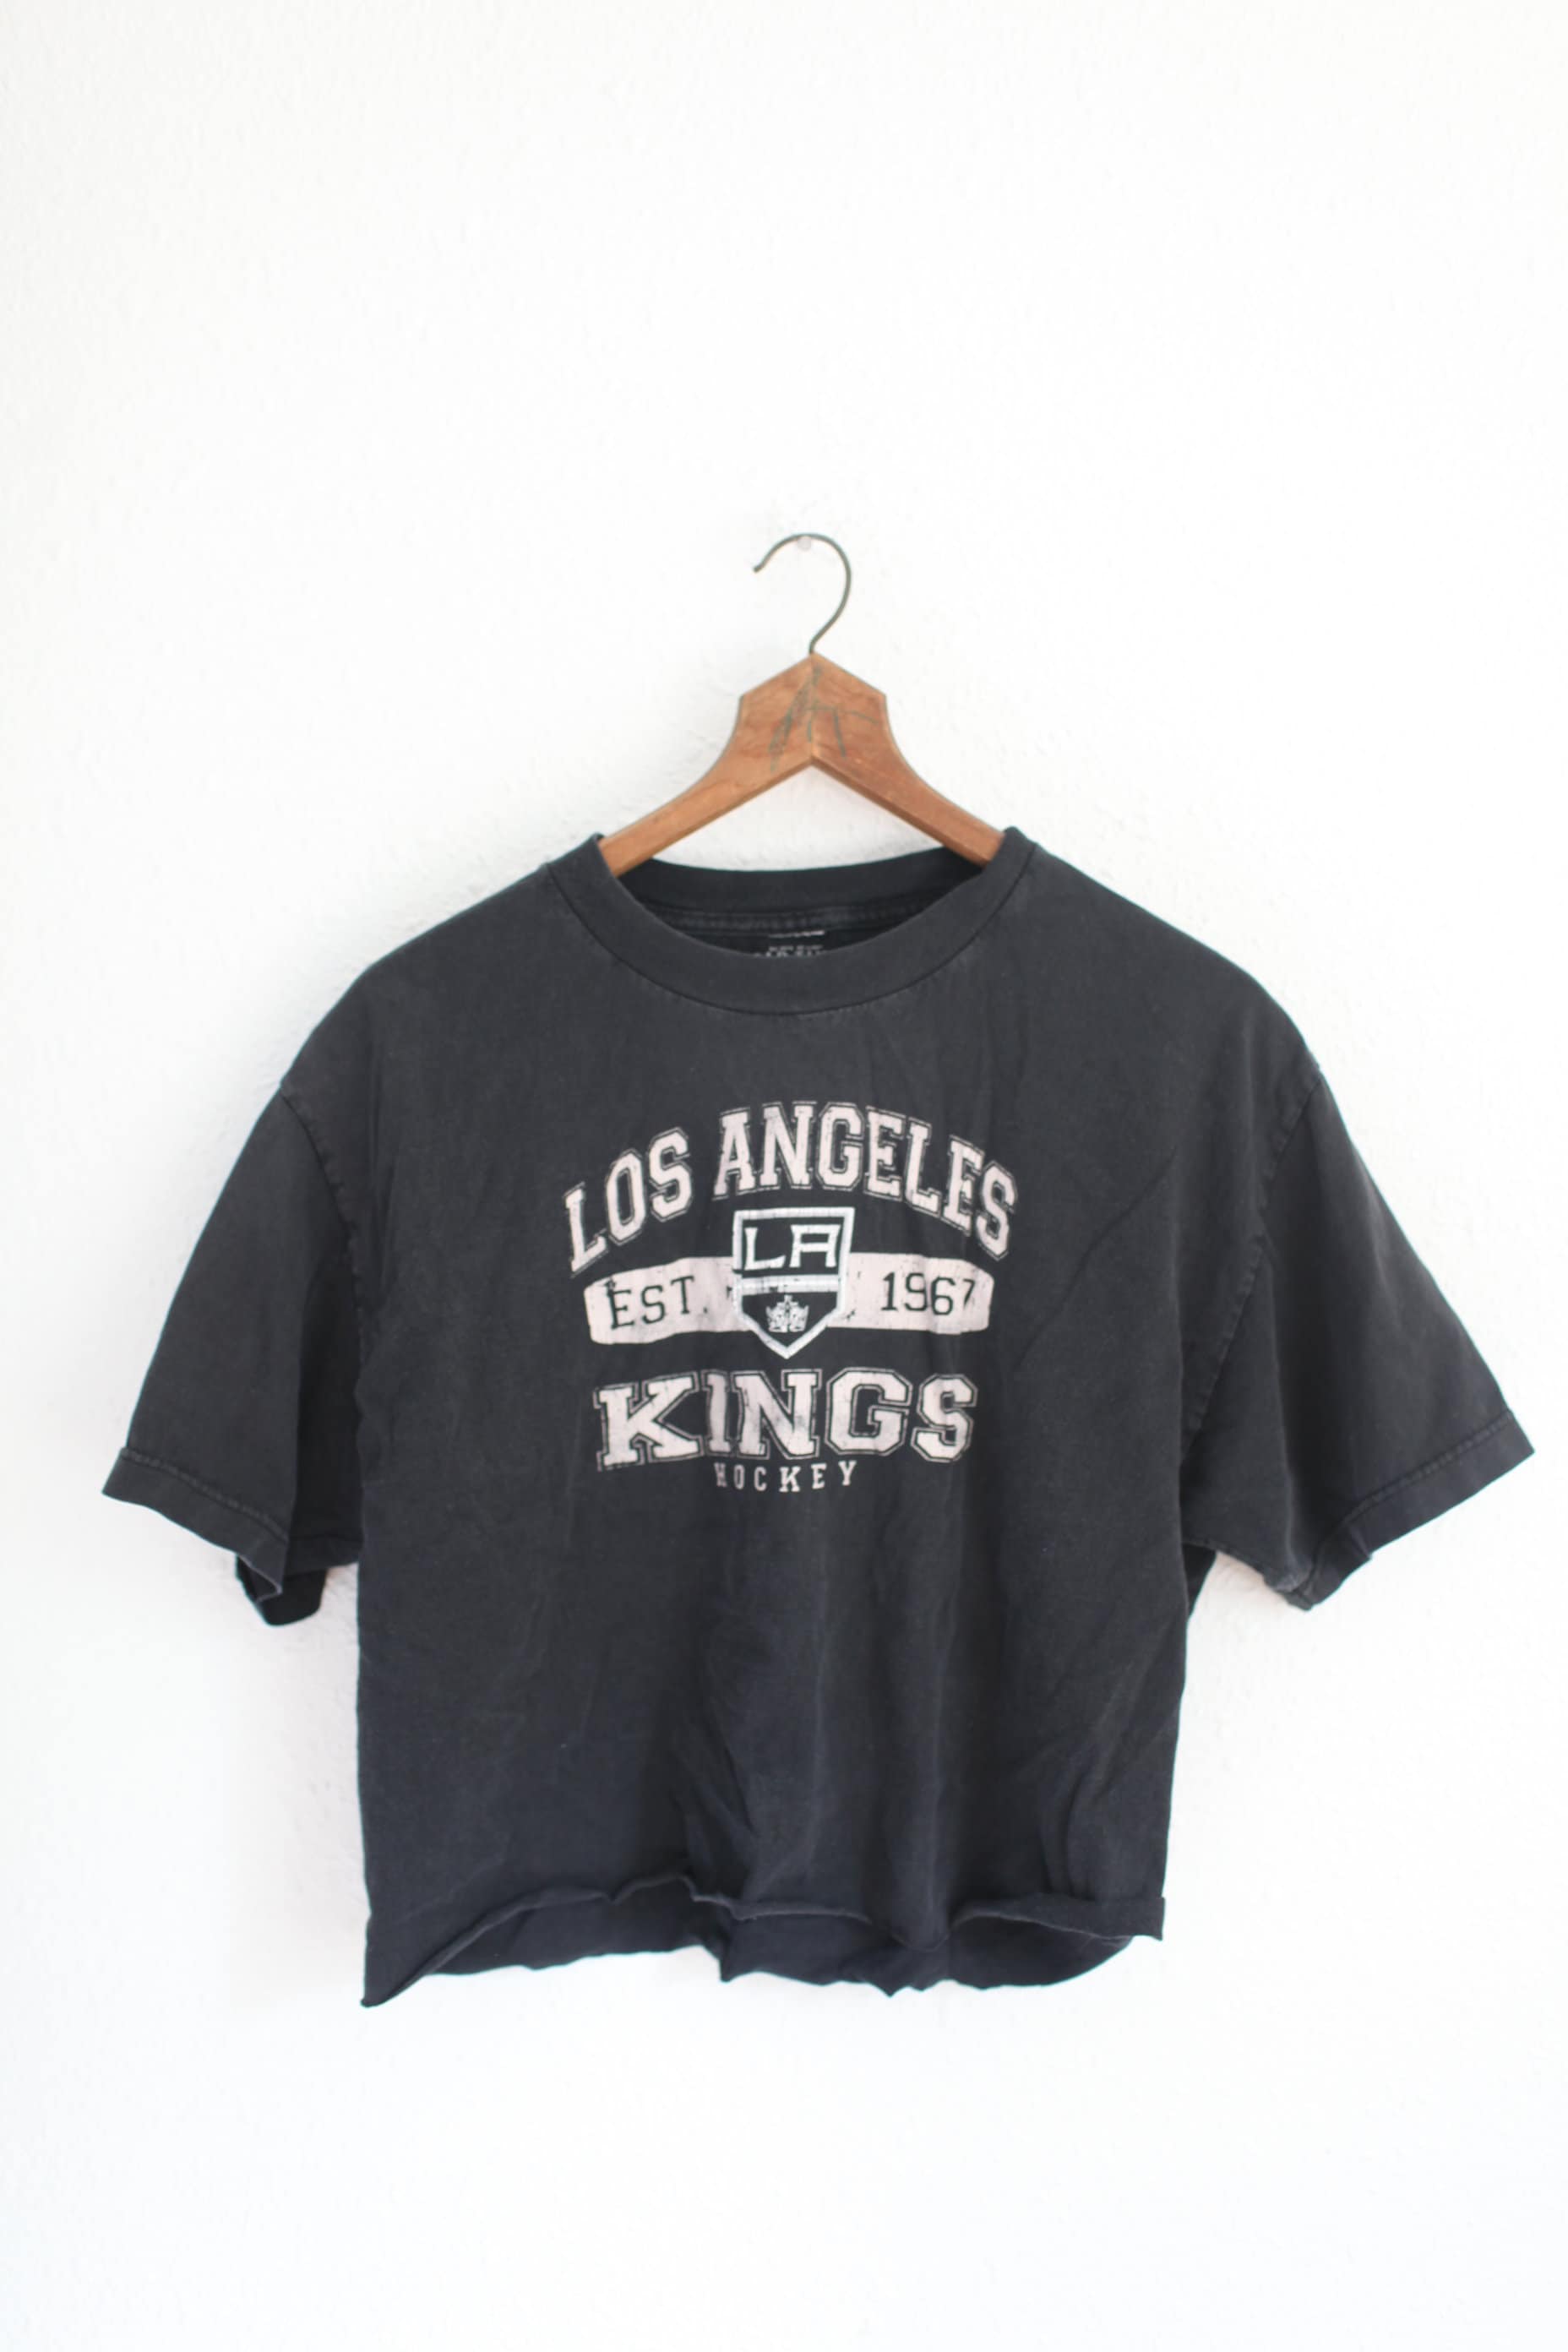 Lakings Shirt Kings Tee Hockey Sweatshirt Vintage Sweatshirt College  Sweater Hockey Fan Shirt Los Angeles Shirt La Kings Promotions La Kings  Season Opener Unique - Revetee